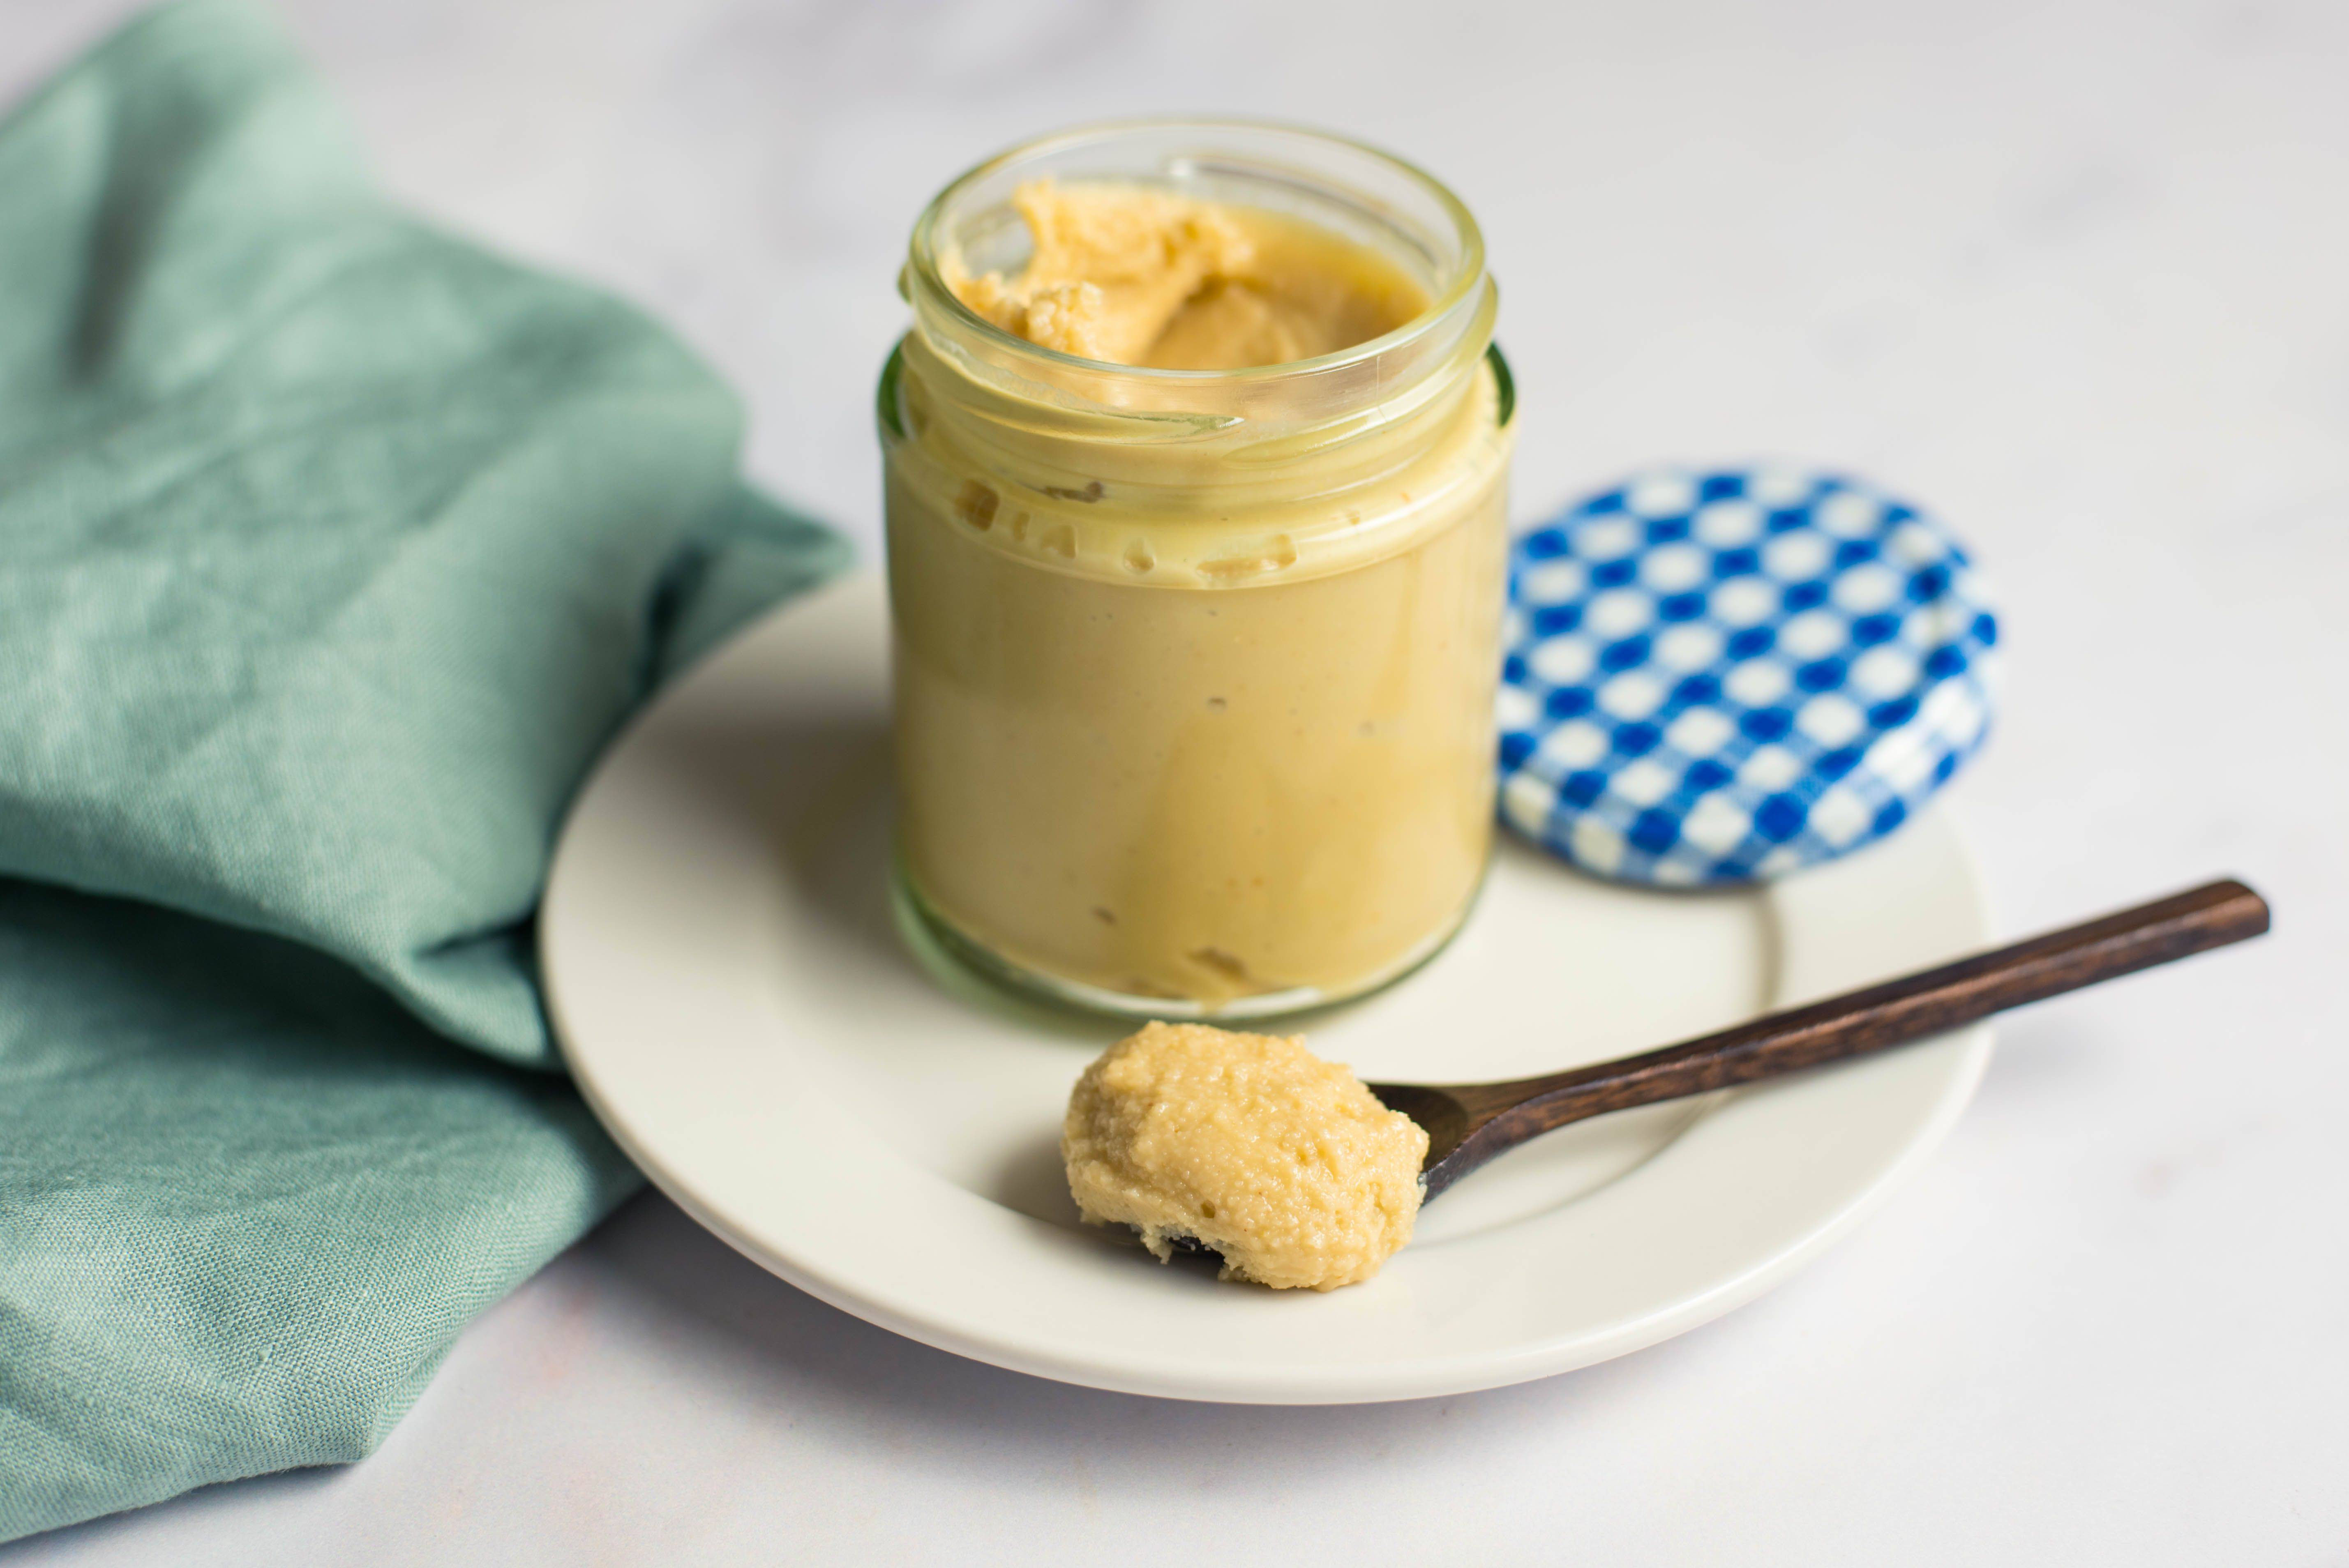 Чатни арахисовый: приготовление, рецепты, польза и вред соуса